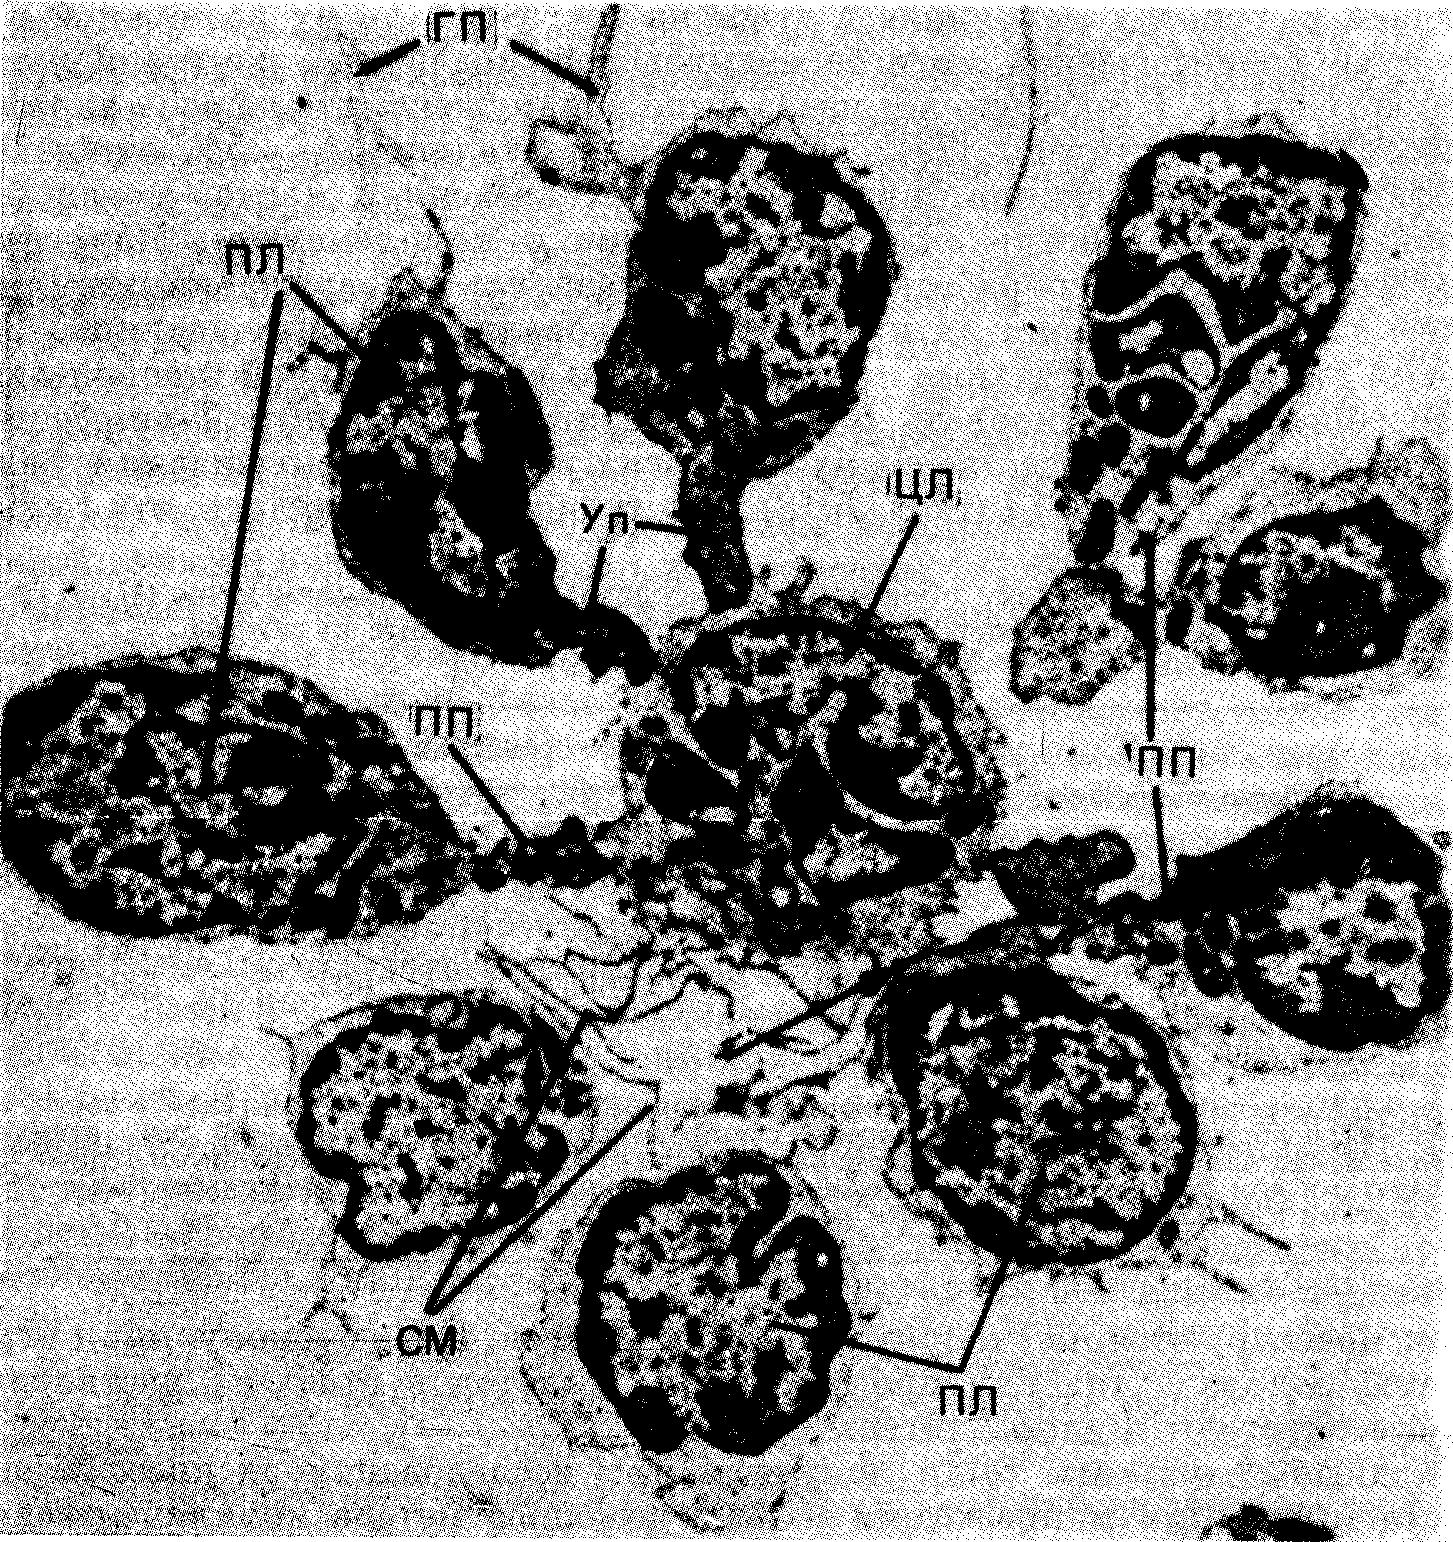 Периферические лимфоциты (ПЛ) — некоторые с тонкими уроподами (Уп) и один без уропода (показан стрелкой) — прикреплены к поверхности центрального лимфоцита.